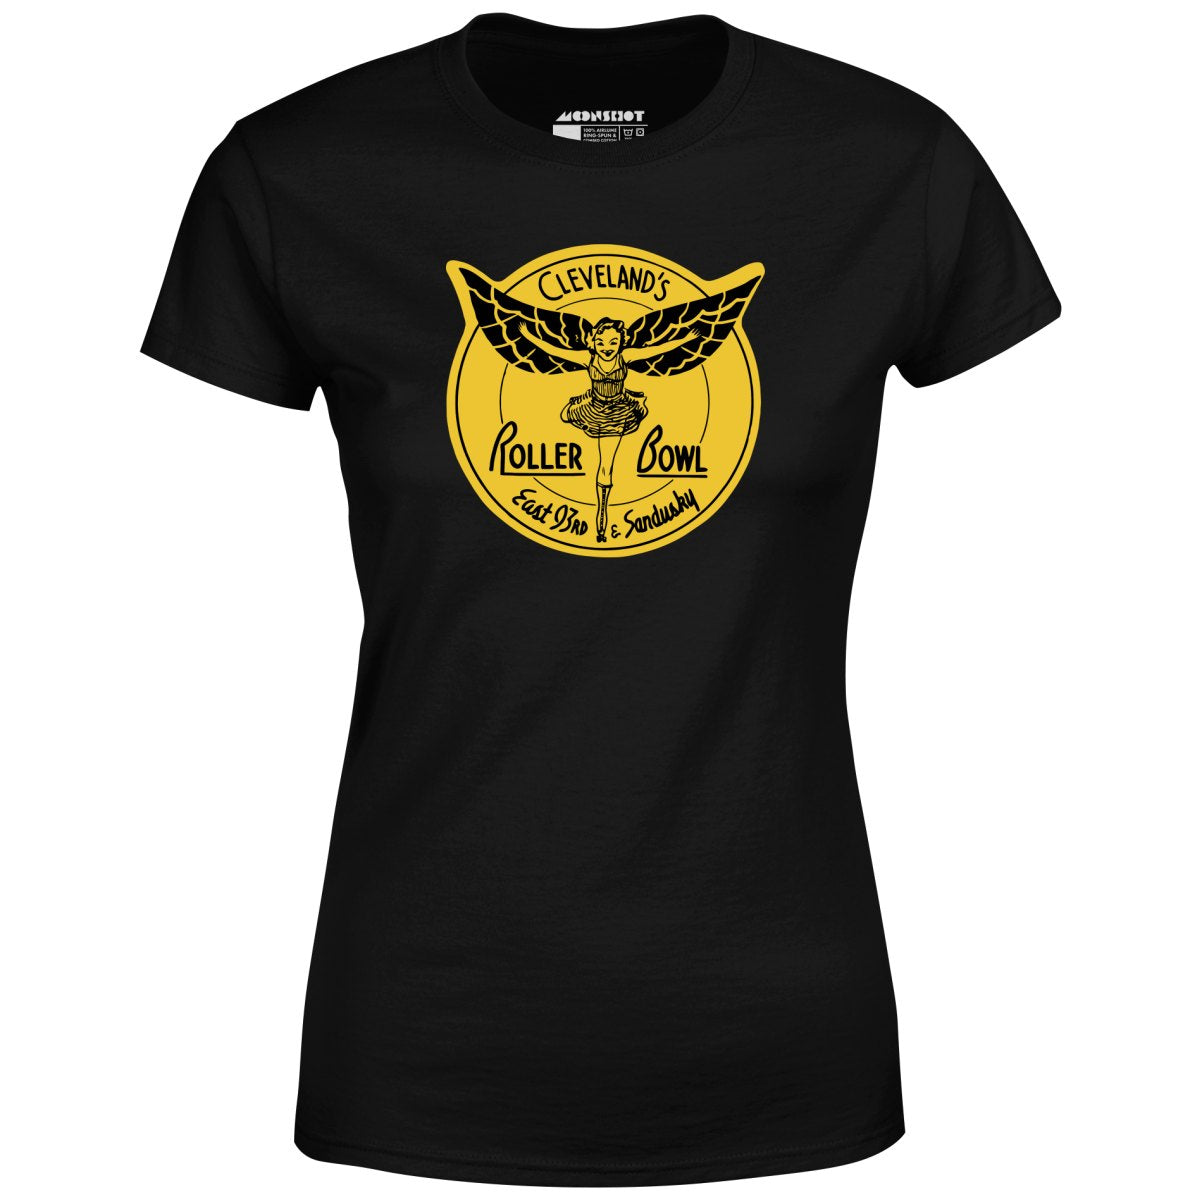 Roller Bowl - Cleveland, OH - Vintage Roller Rink - Women's T-Shirt